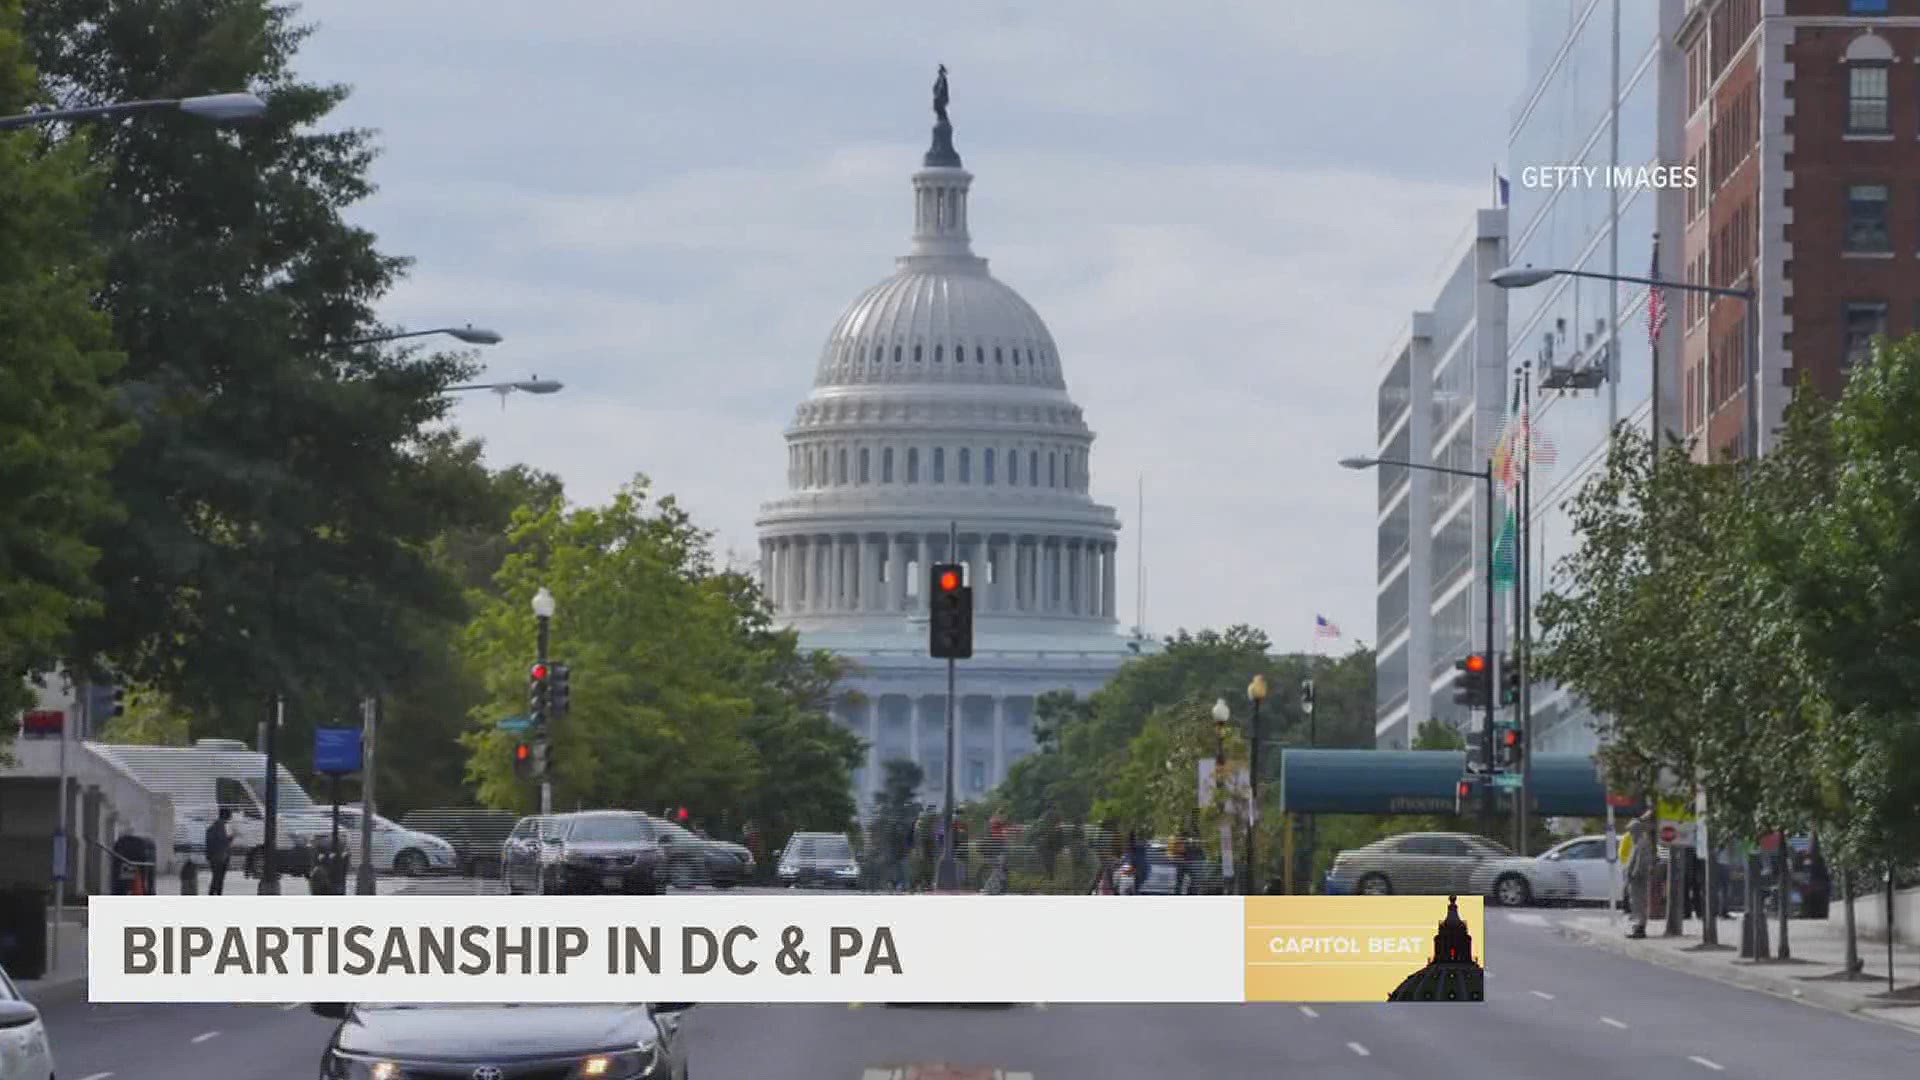 Bipartisanship in DC & PA